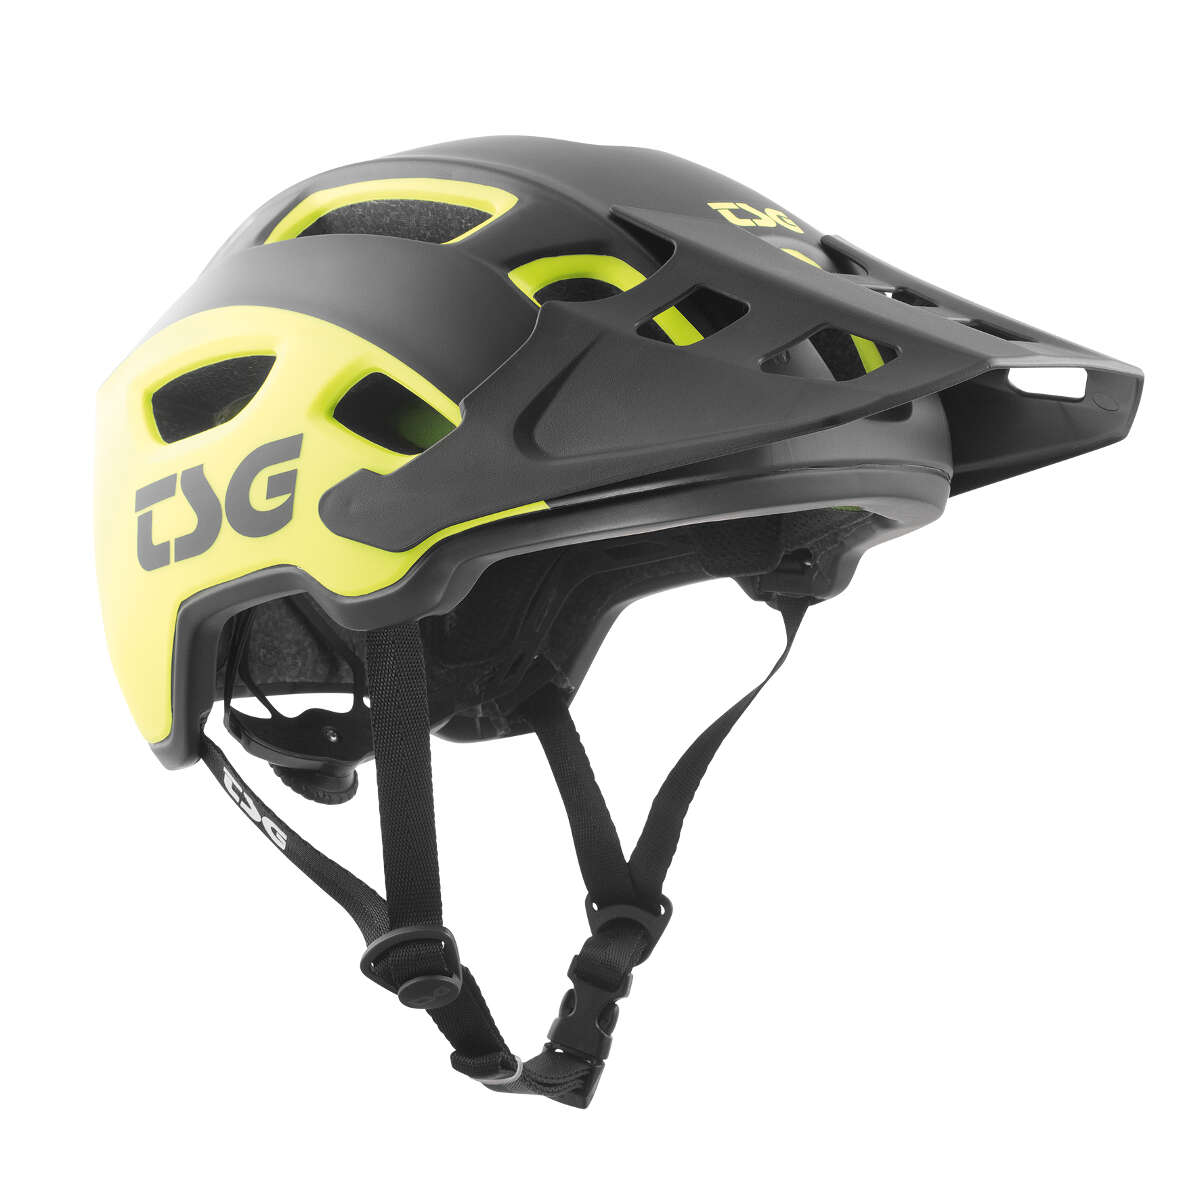 TSG Trail MTB Helmet Trailfox Graphic Design - Sides Acid Yellow/Black